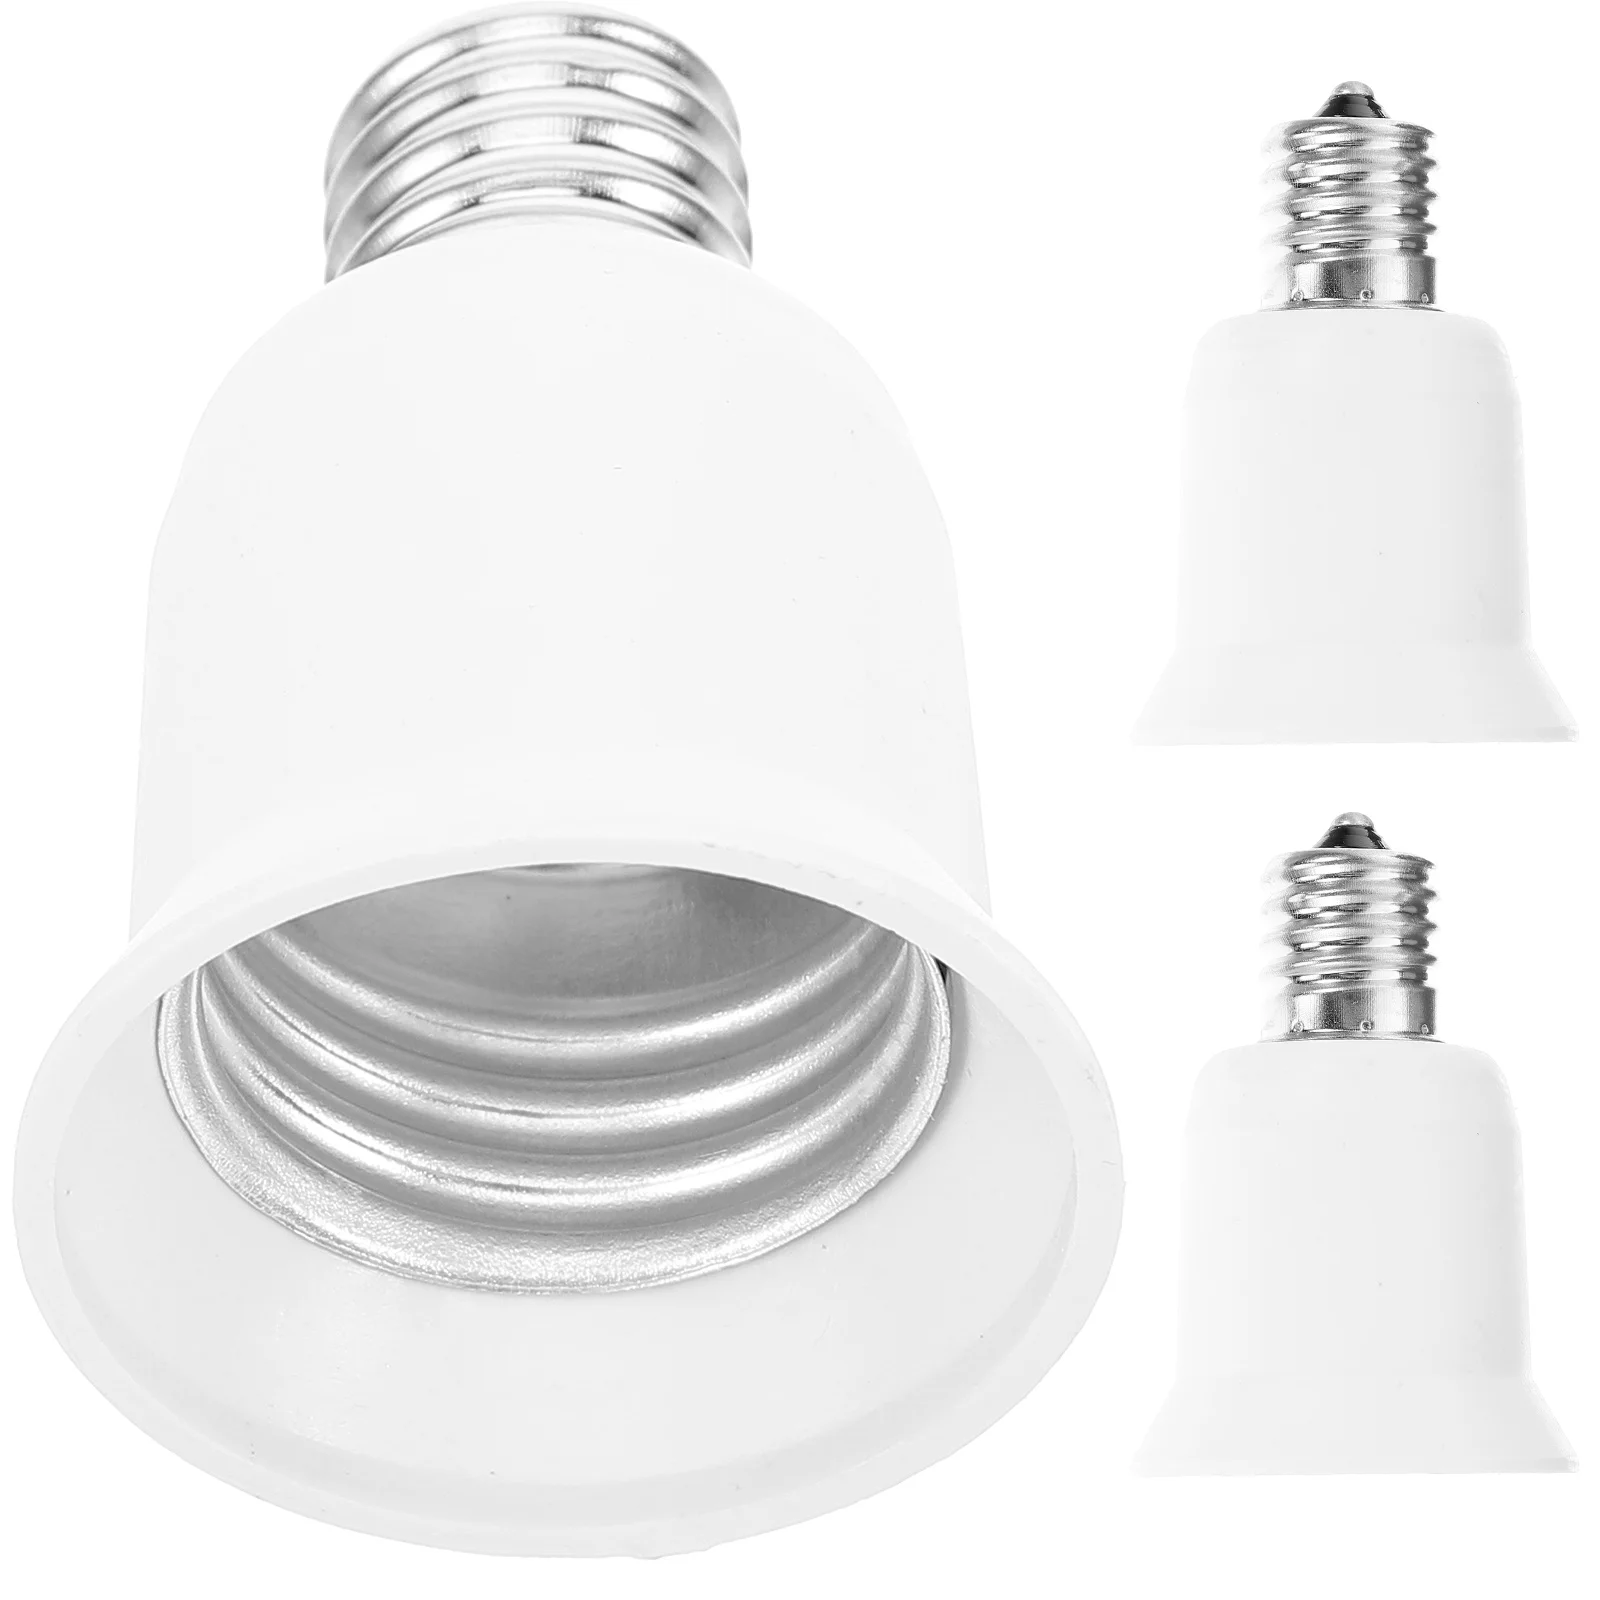 

3 Pcs Conversion Lamp Holder Light Bulb Changer Socket Splitter E17 to E26/e27 Adapter Converter Pbt